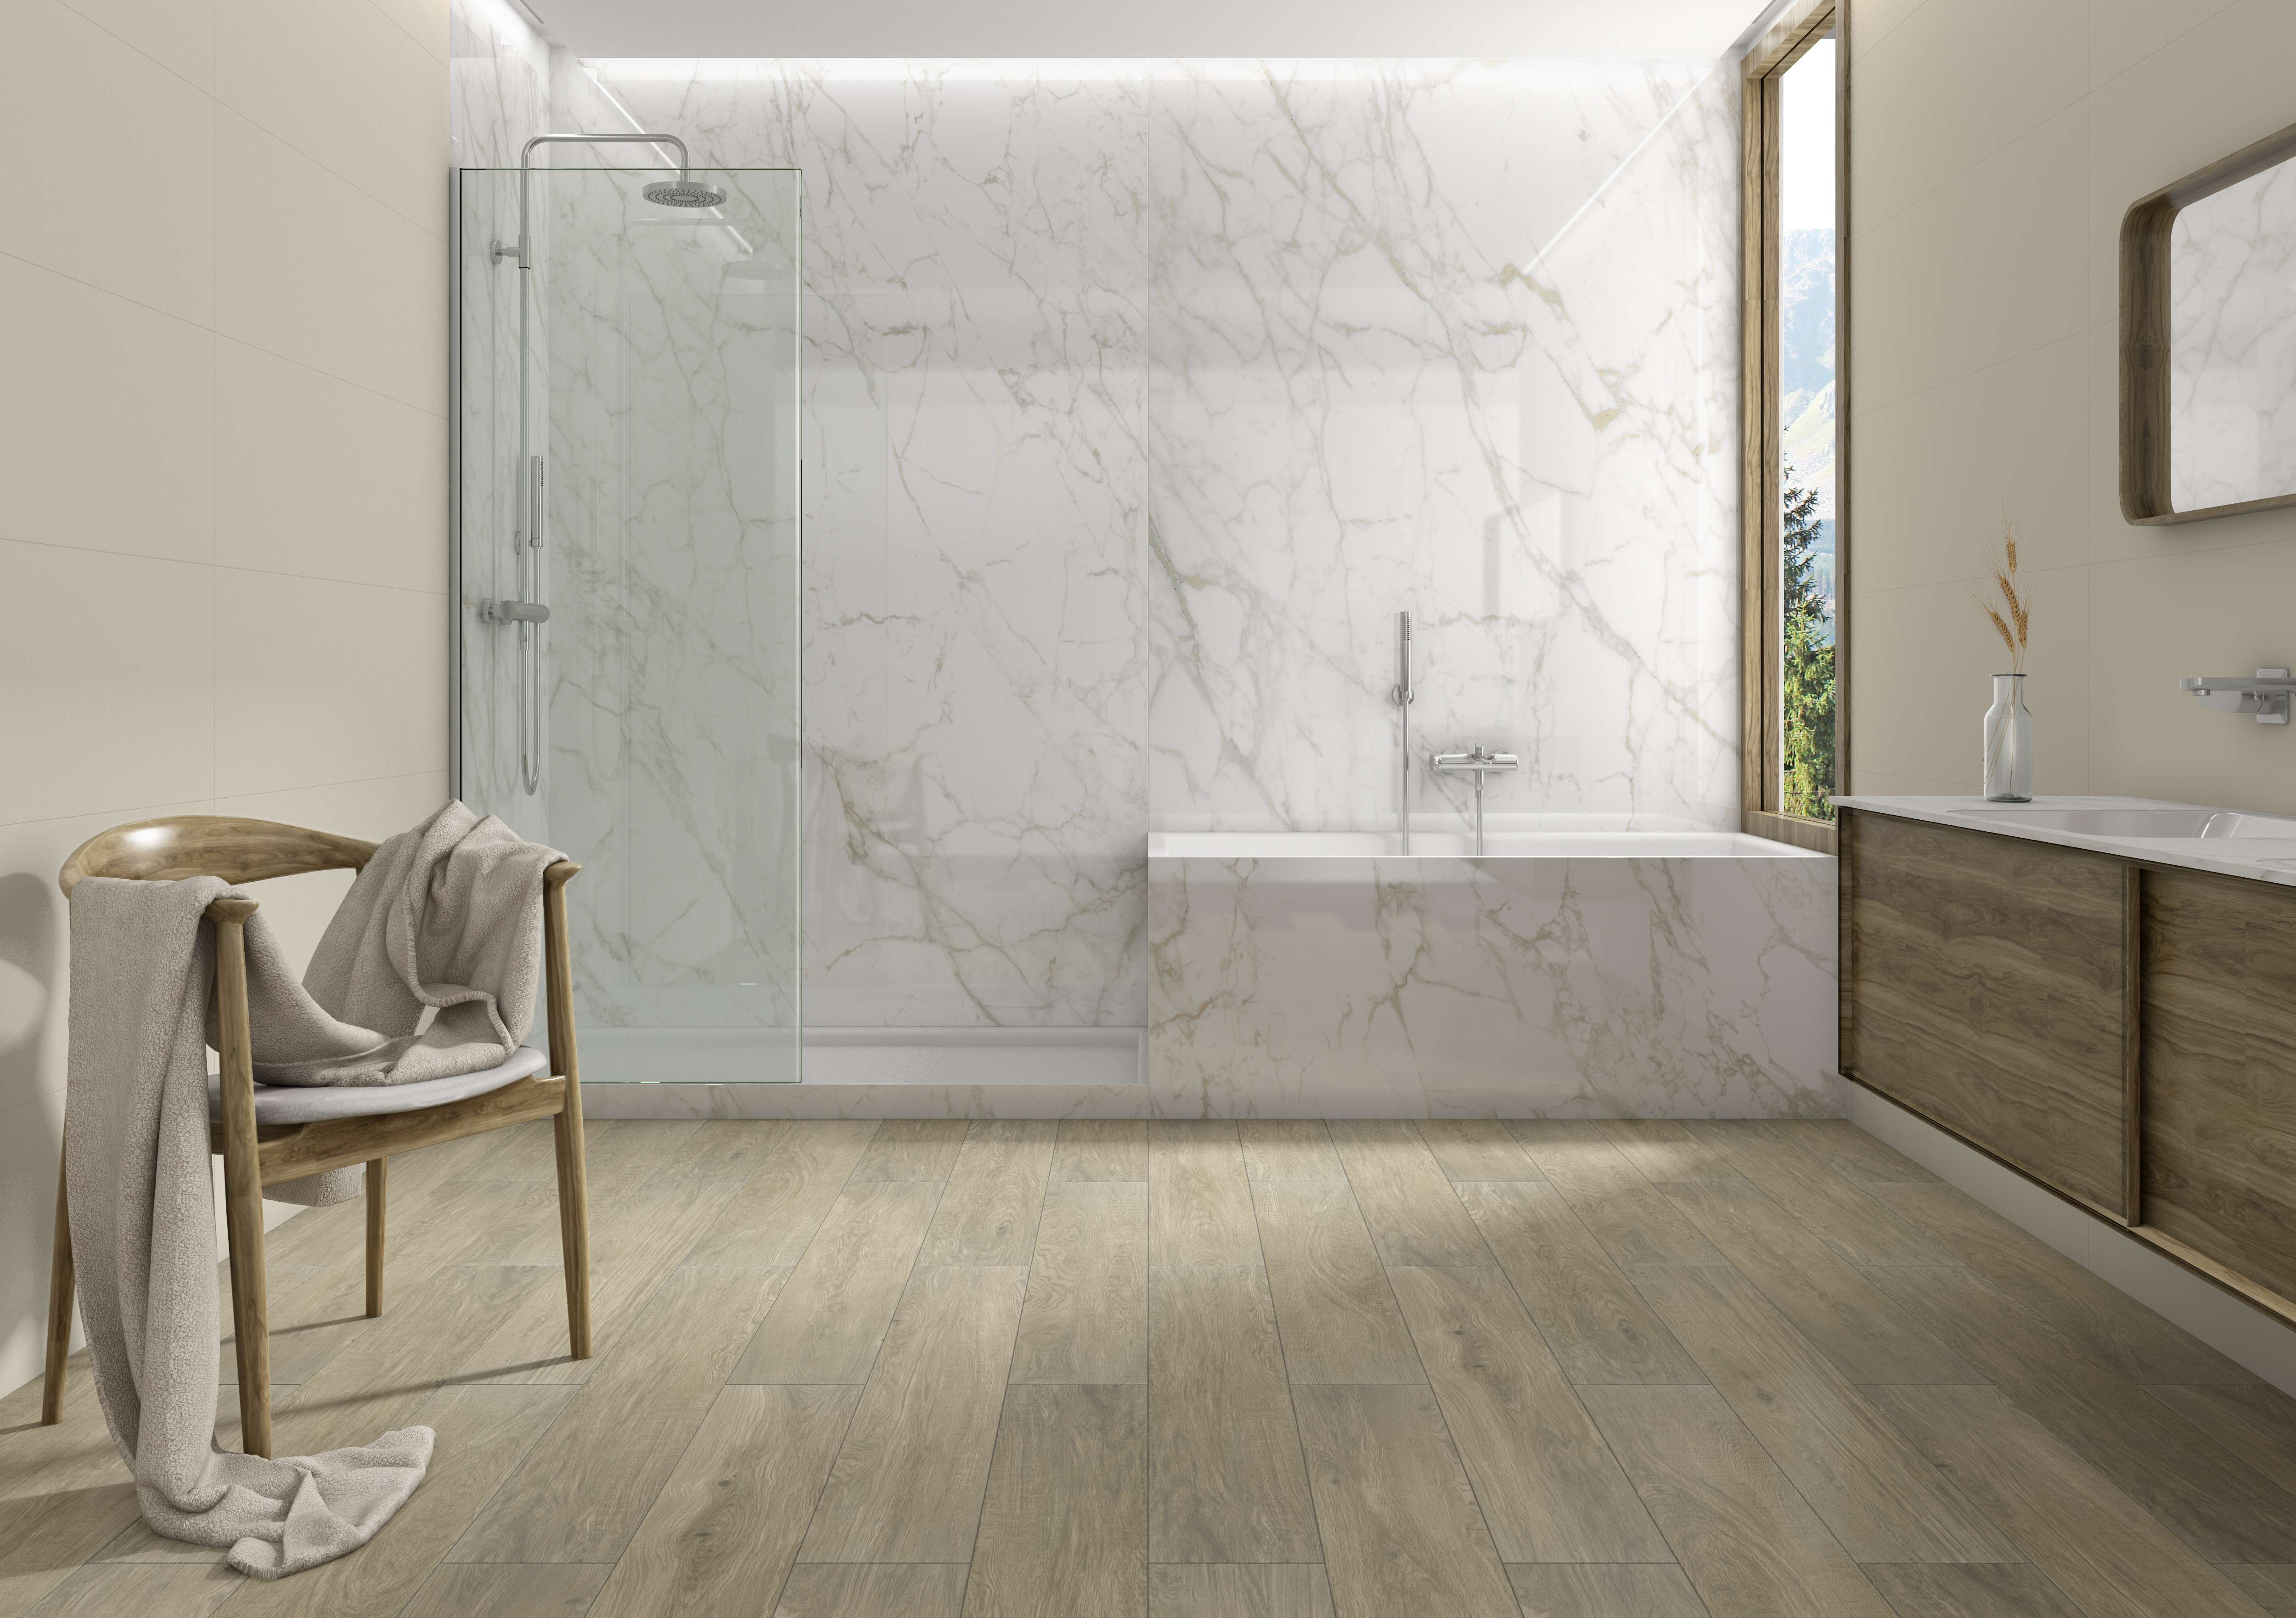 Ceralsio Carrara Vagli bathroom wall cladding